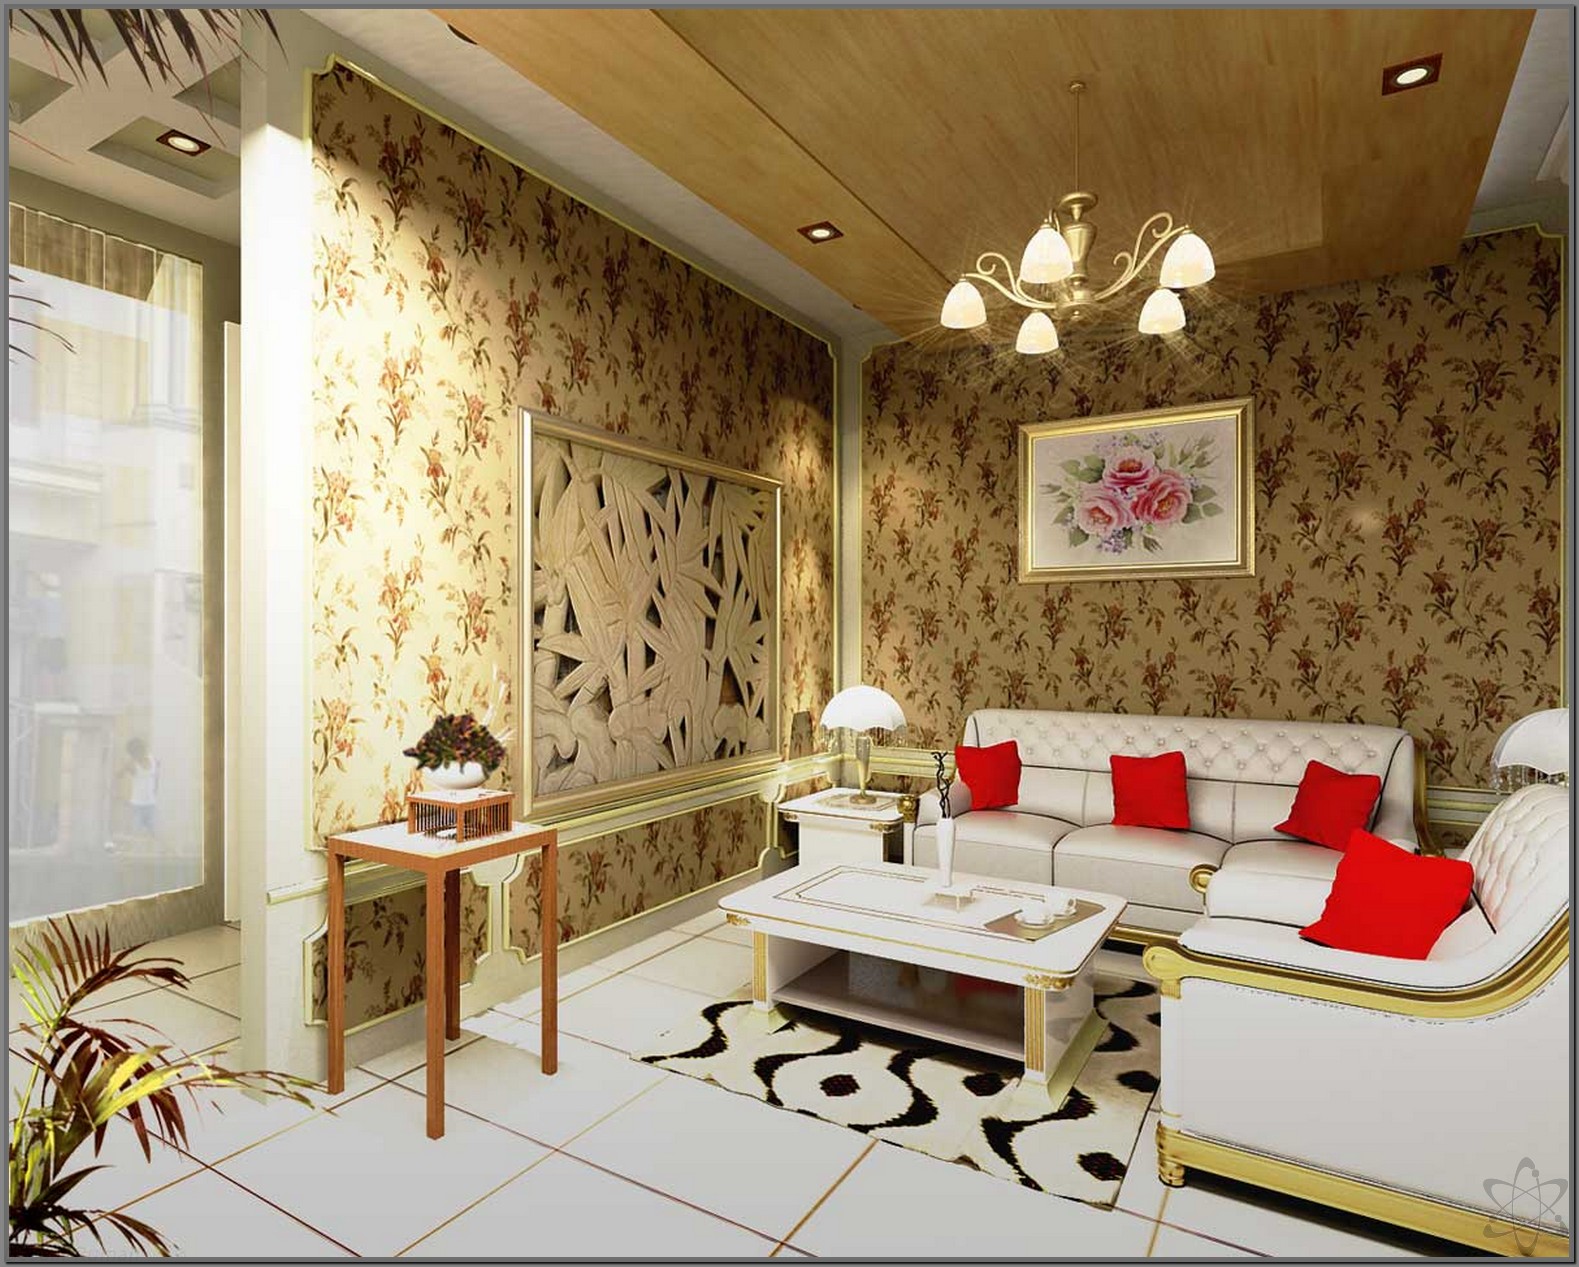 motif wallpaper untuk ruang tamu sempit,living room,interior design,room,property,furniture